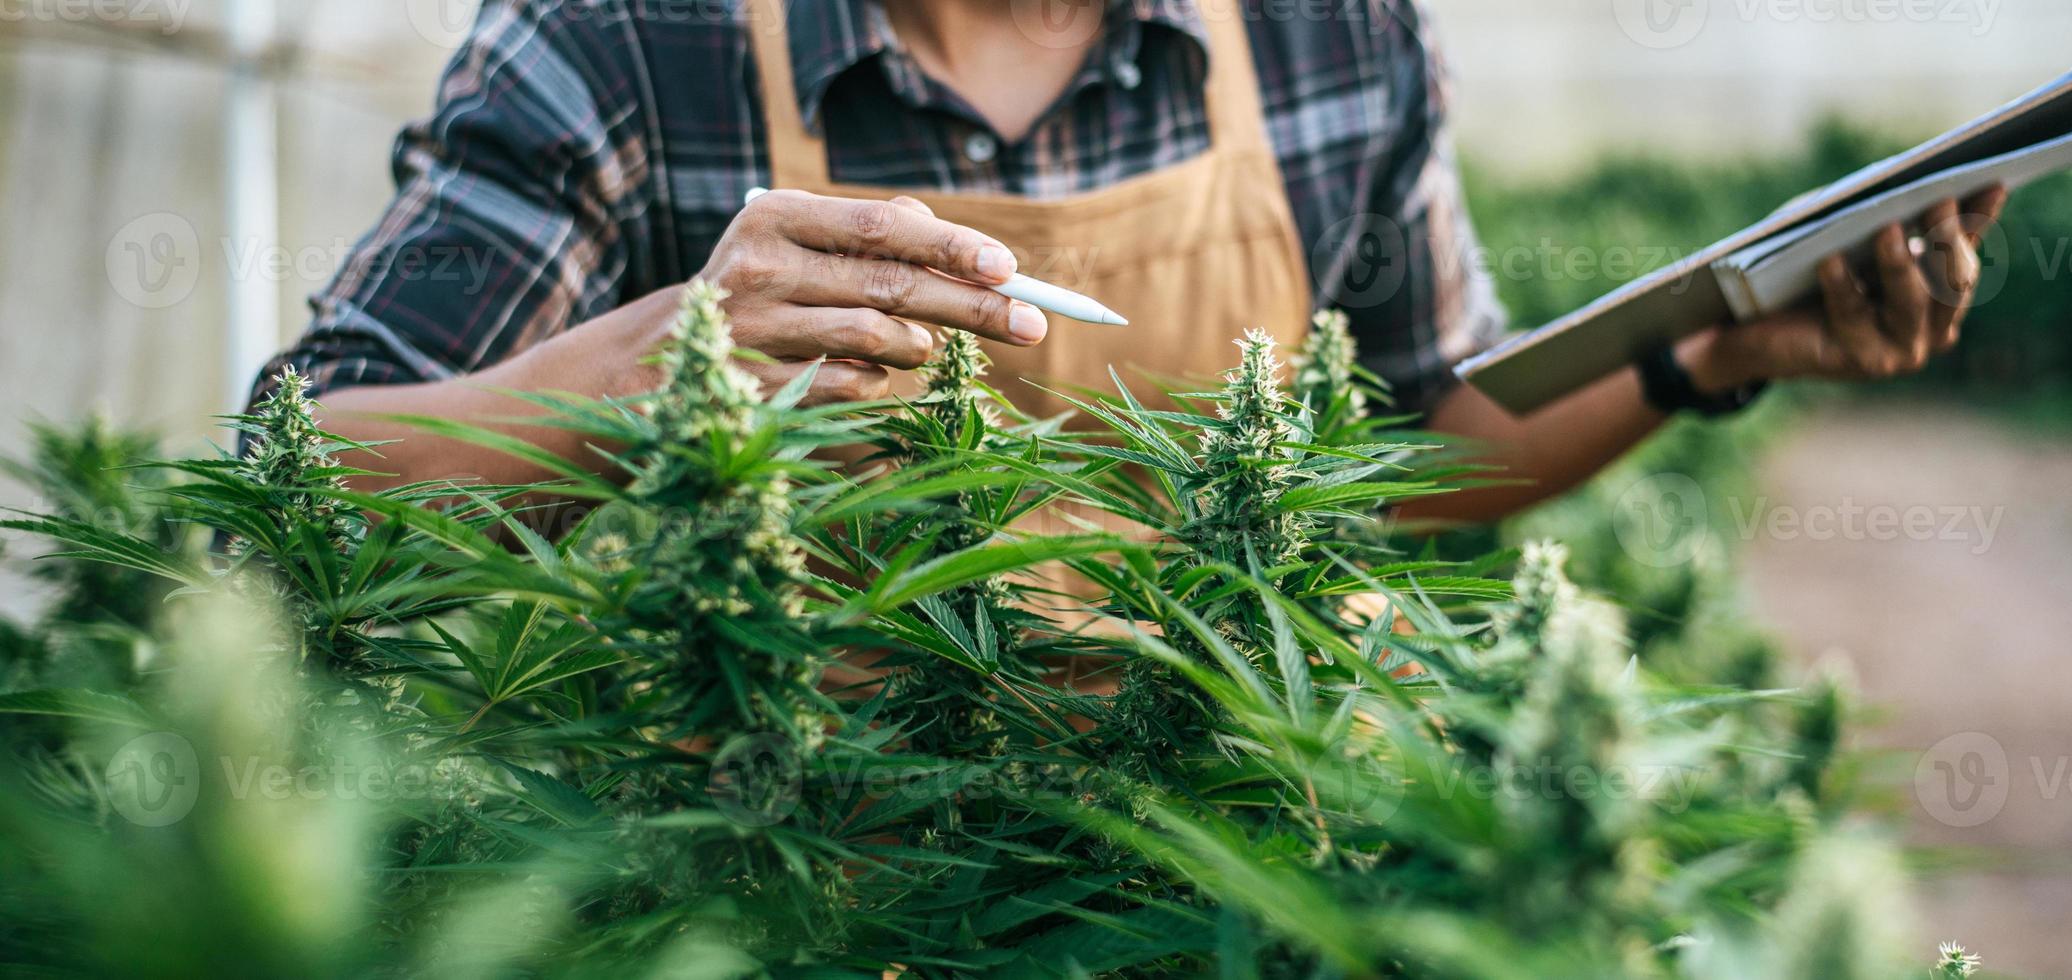 homme asiatique chercheur de marijuana vérifiant la plantation de cannabis de marijuana dans une ferme de cannabis, cannabis agricole commercial. concept d'entreprise de cannabis et de médecine alternative. photo